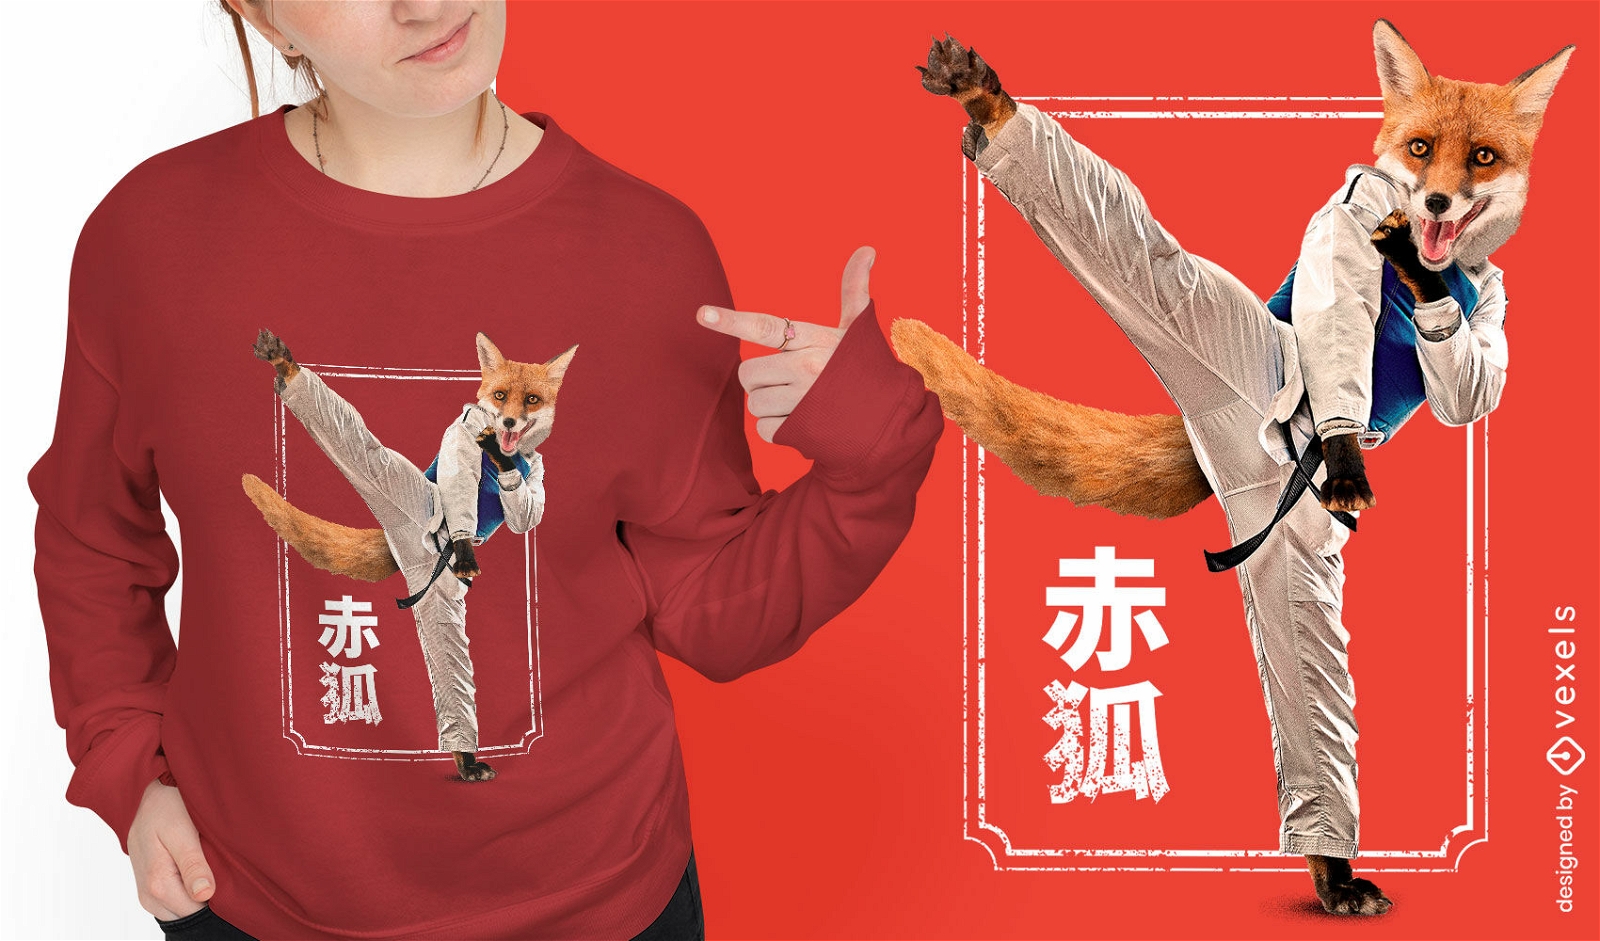 Diseño de camiseta de artes marciales de animales zorro.